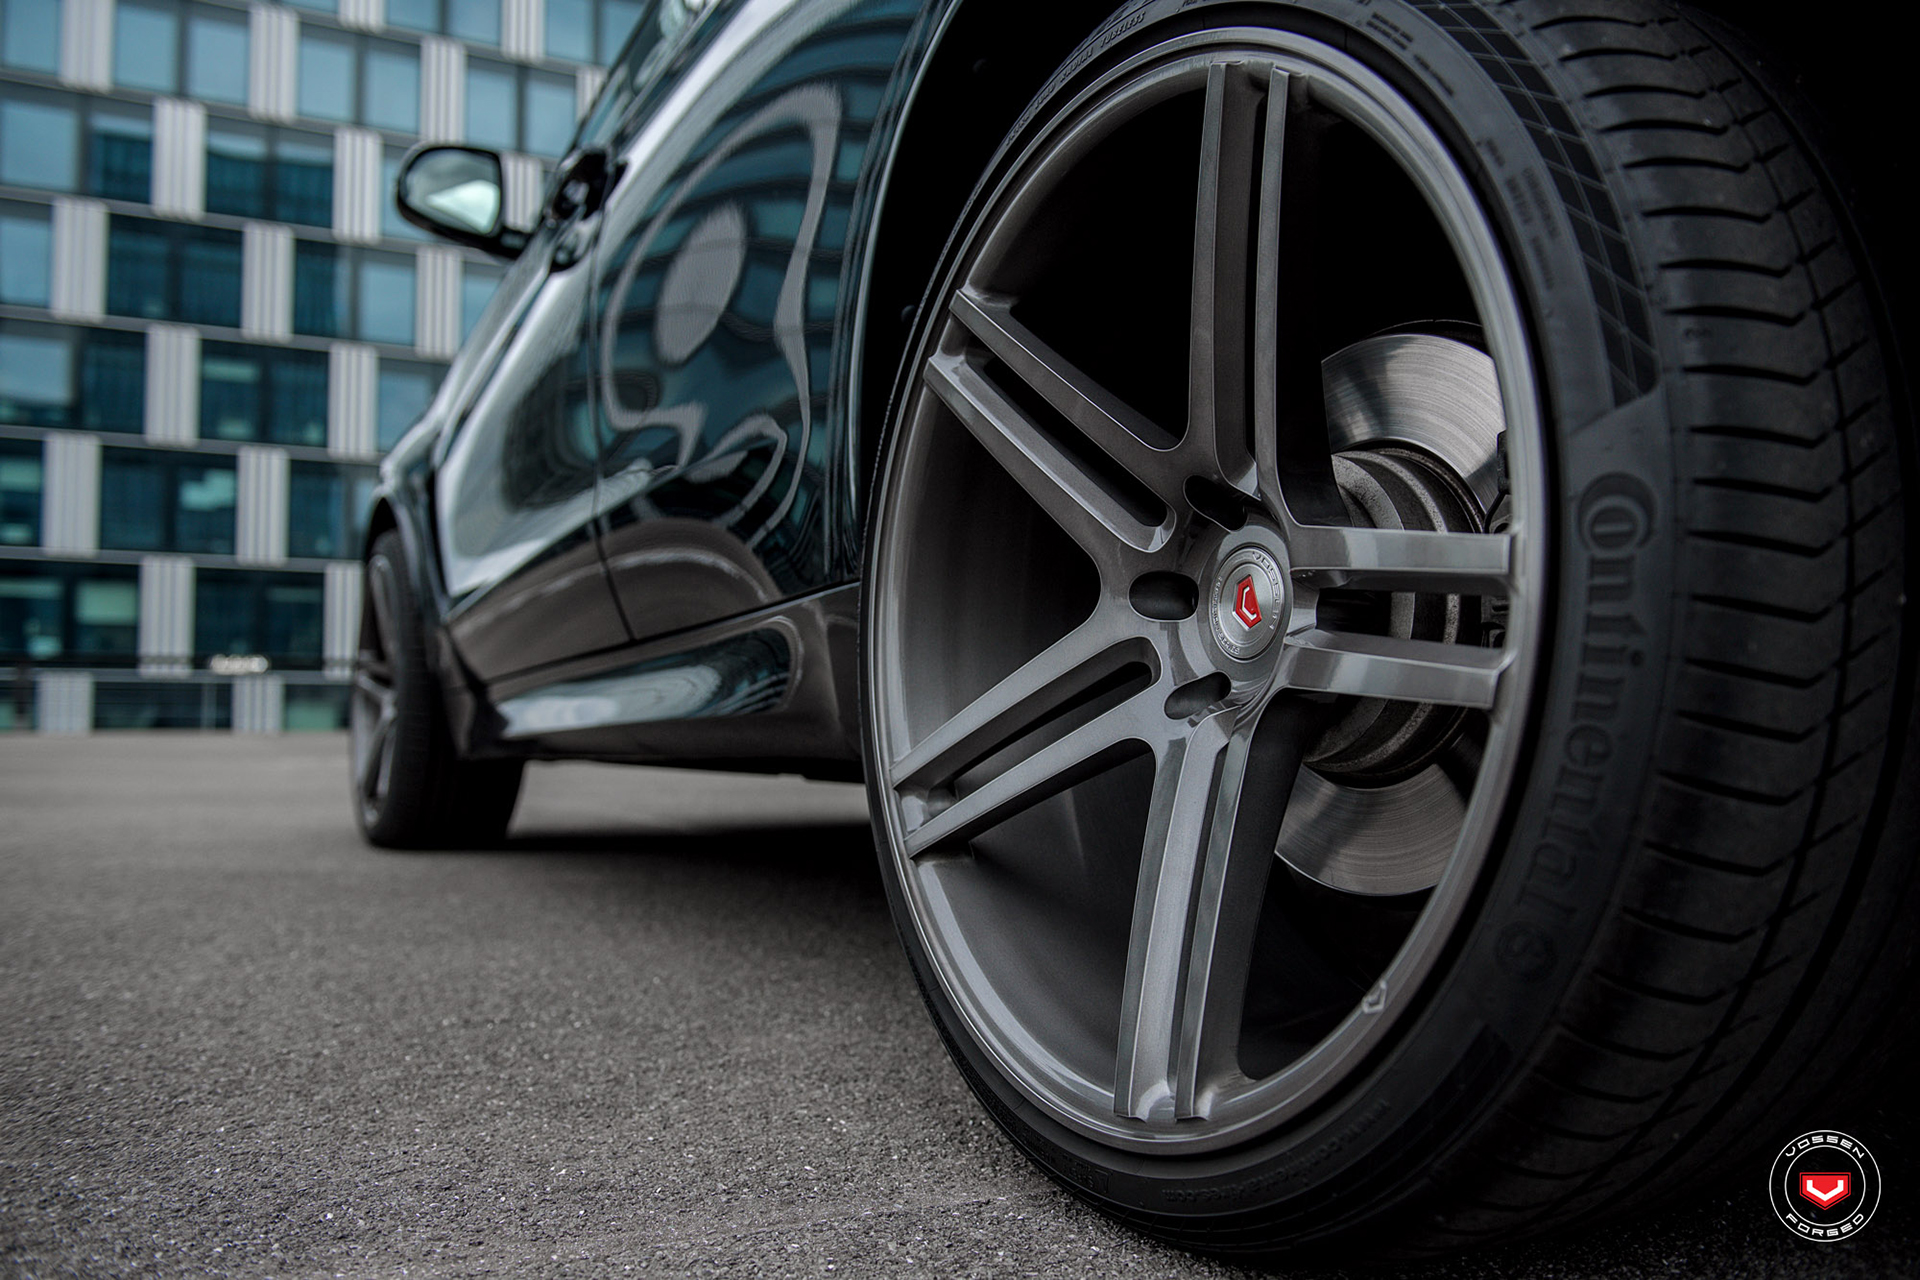 Carbon Black Metallic BMW X5 Gets New Vossen Wheels